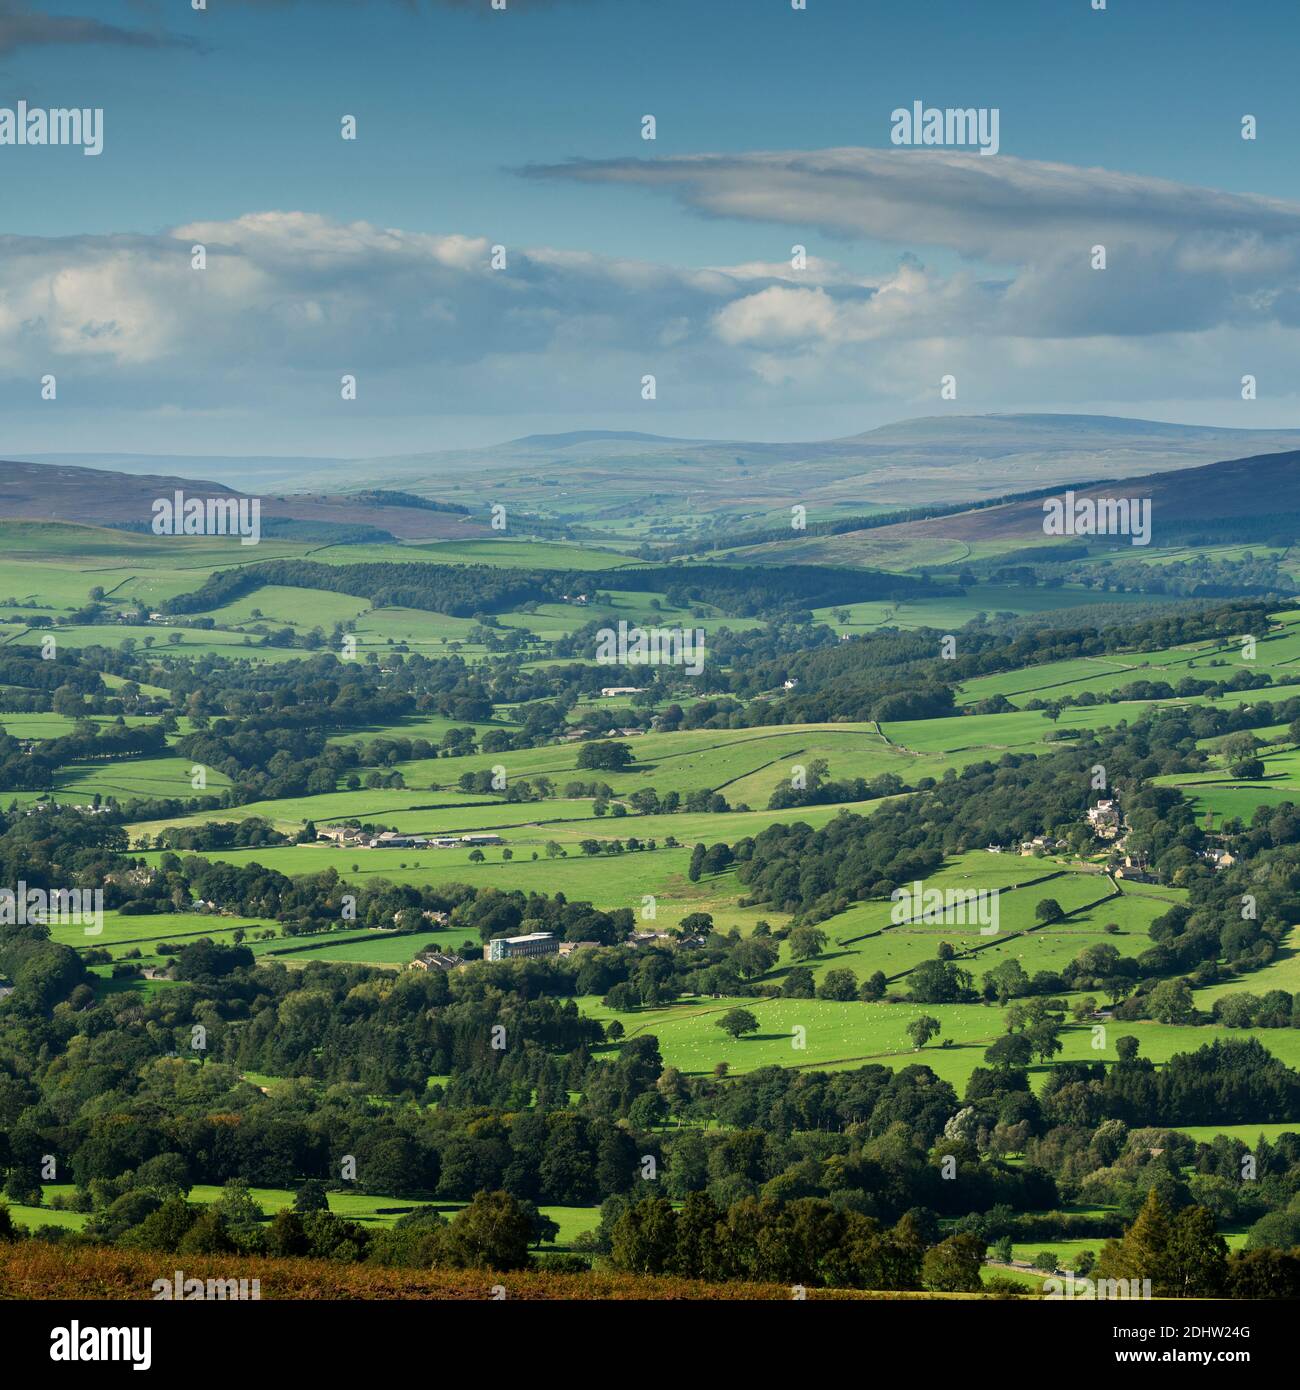 Vue panoramique sur la campagne de Wharfedale (large vallée verdoyante, collines ondoyantes, hautes montagnes, lumière du soleil sur la terre, ciel bleu) - West Yorkshire, Angleterre, Royaume-Uni. Banque D'Images